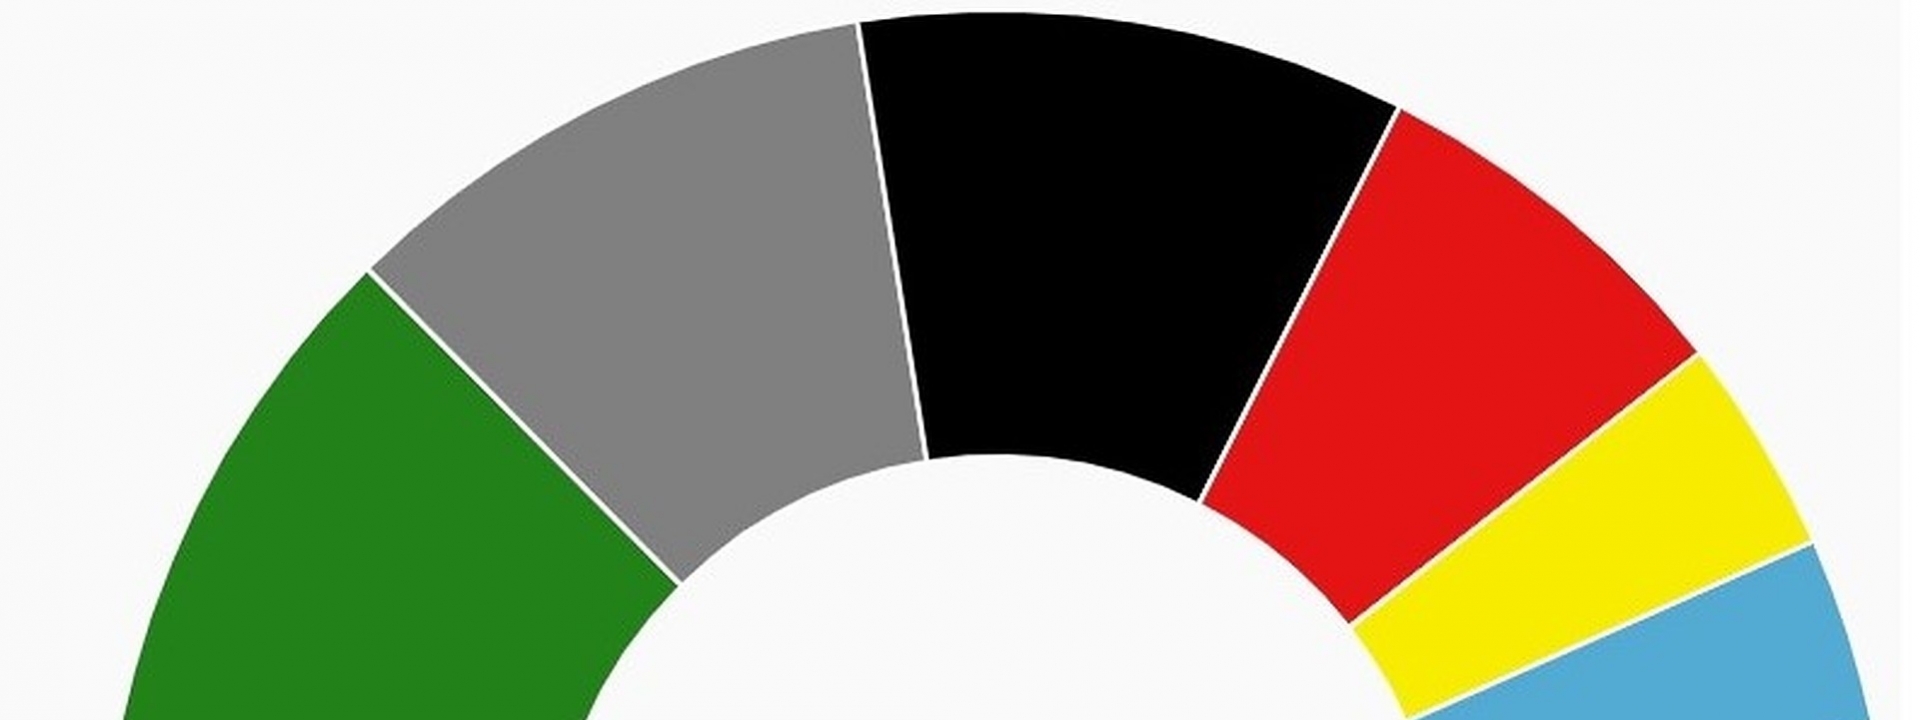 Grafik: Ein Tortendiagramm der Stimmverteilung auf die Parteien